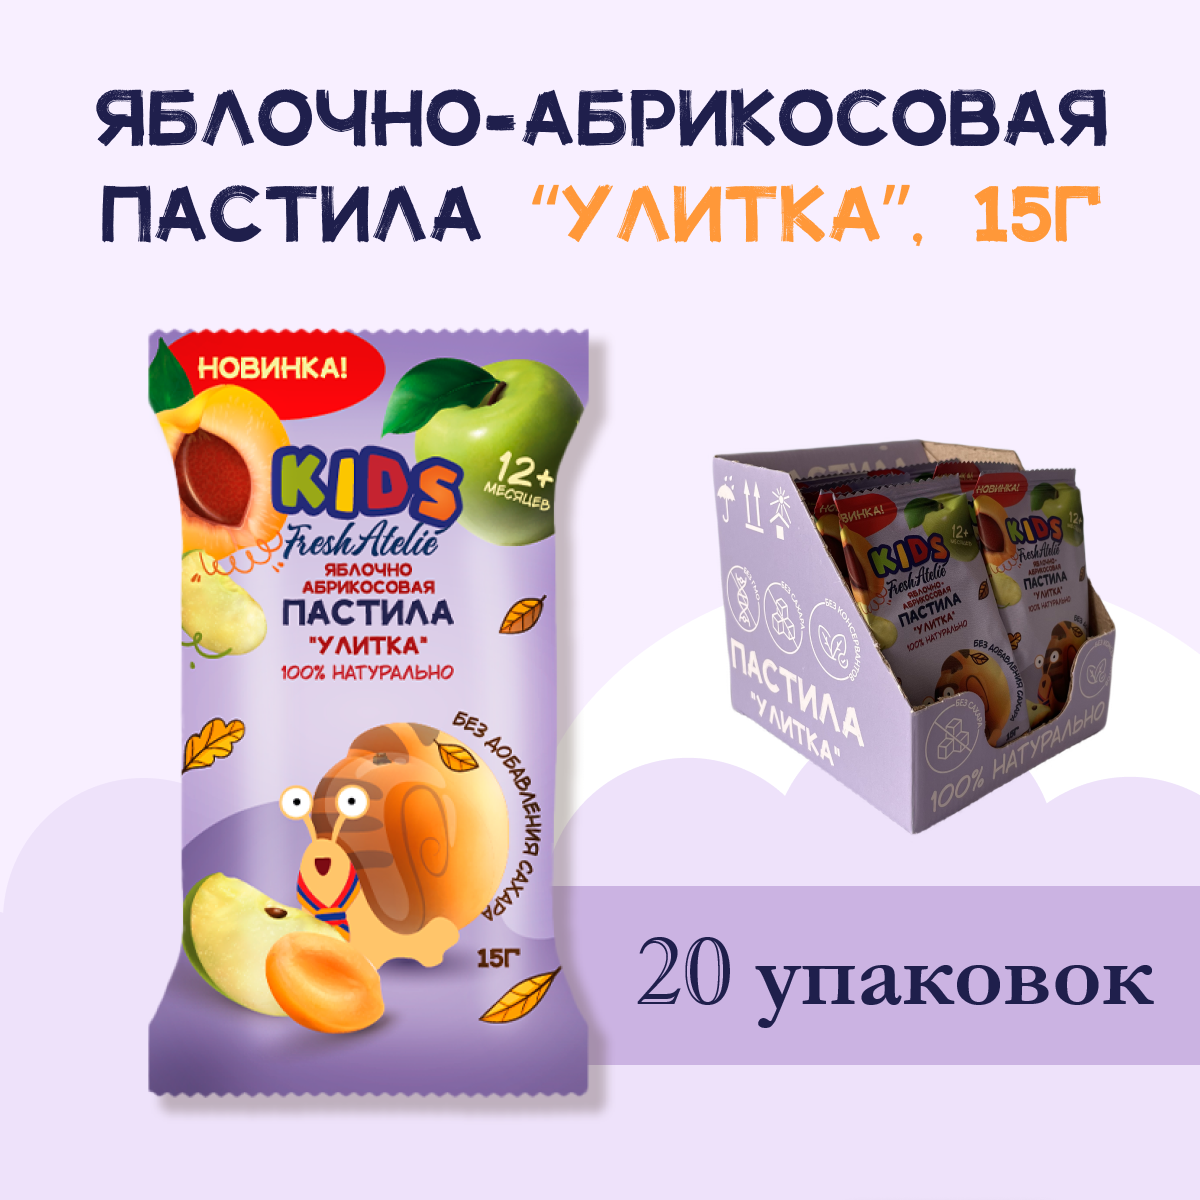 Пастила Яблочно-Абрикосовая для детей FRESH ATELIE KIDS Улитка 15гр, 20 упаковок вкусняшки для сахарных детей